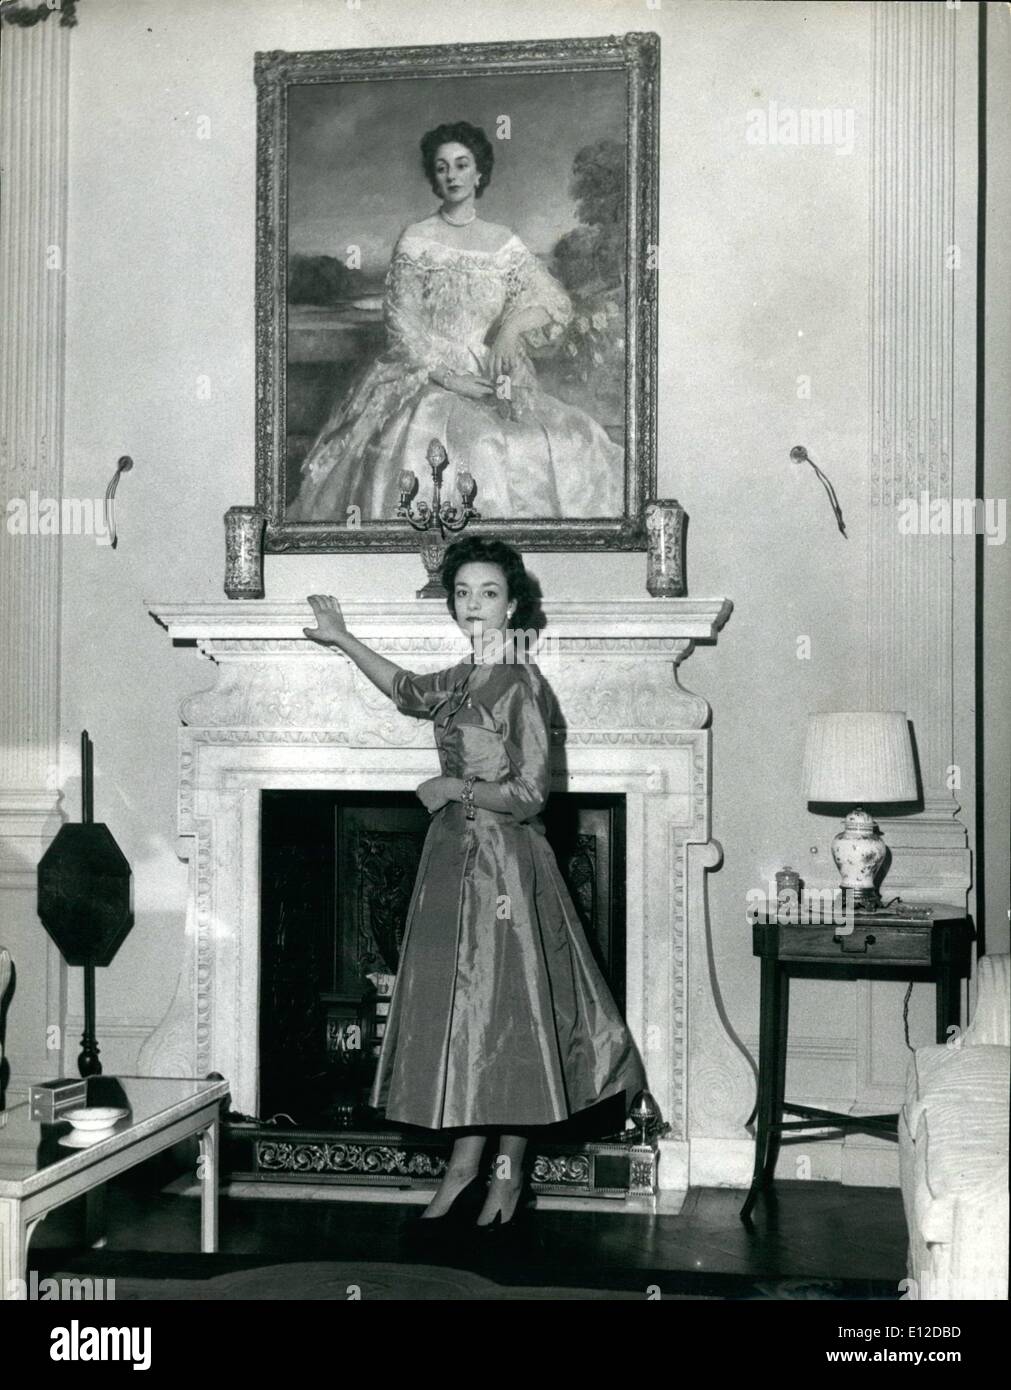 19. Dezember 2011 - fotografiert Lady Mary Baillie-Hamilton in den Salon des Hauses in Tite Street, Chelsea London. Über dem Kaminsims ist ein Portrait, wenn ihre Mutter, die Gräfin Haddington. Sie werden am Tag der Krönung die Königin teilnehmen: Sechs schöne Mädchen, deren Alter von 17 bis 83 reichen, wurden von der Königin ausgewählt, um ihren Hofdamen bei der Krönungszeremonie zu werden. Königin Victoria Präzedenzfall, wenn sie gekrönt wurde. Maids Of Honour anstelle der üblichen Seiten trug ihren Zug. Die Mädchen werden von Mary, Herzogin von Devonshire, Herrin der Gewänder der Königin ausgebildet. Stockfoto